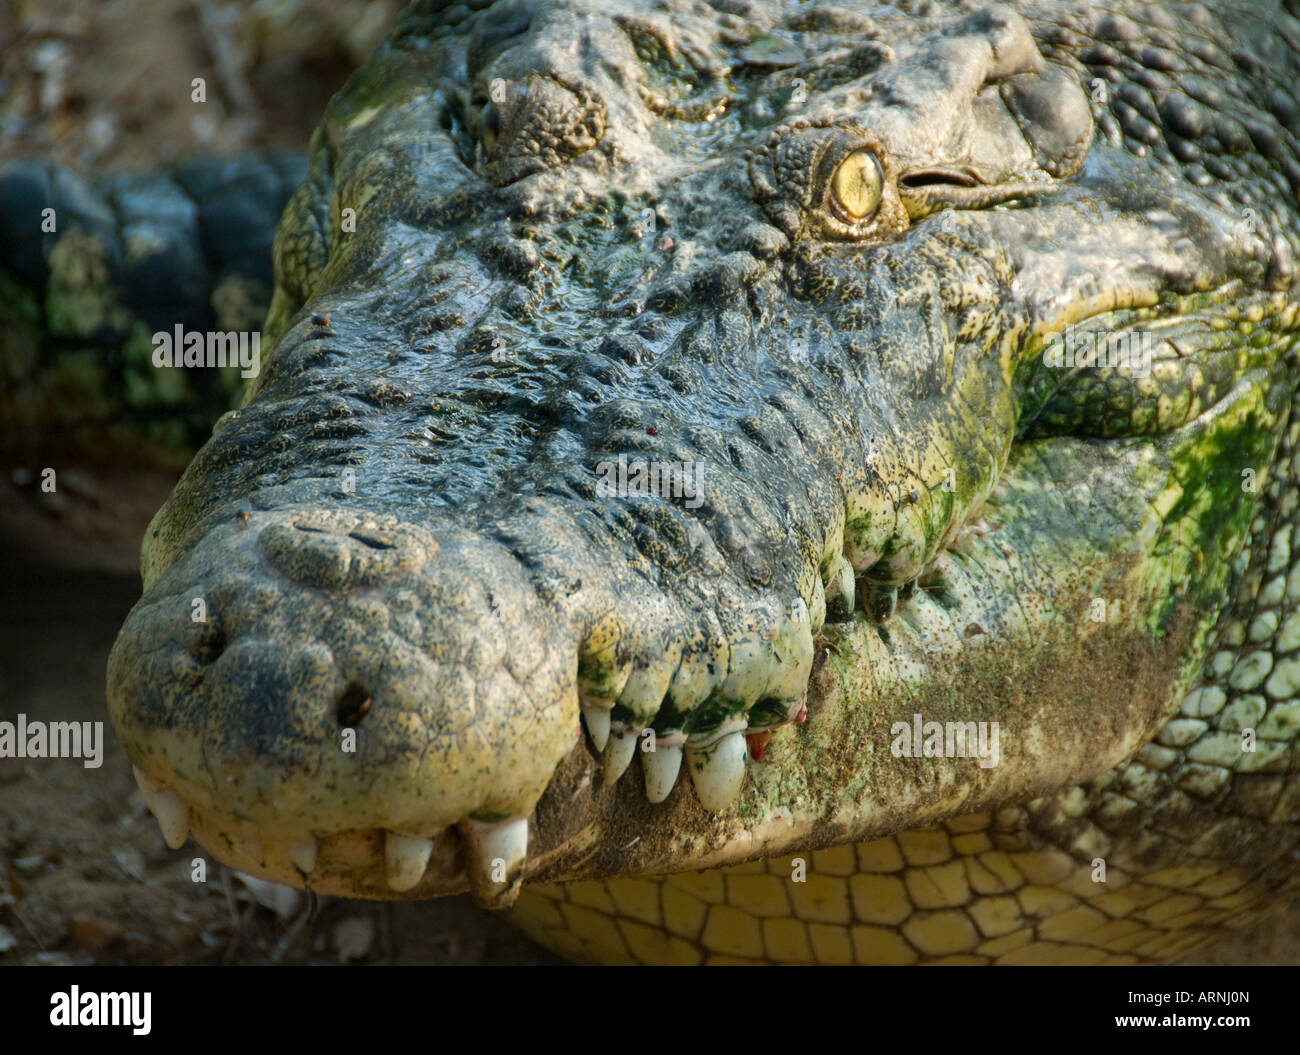 Un saltwater Crocodile crocodile à la Banque au Tamil Nadu Inde Banque D'Images